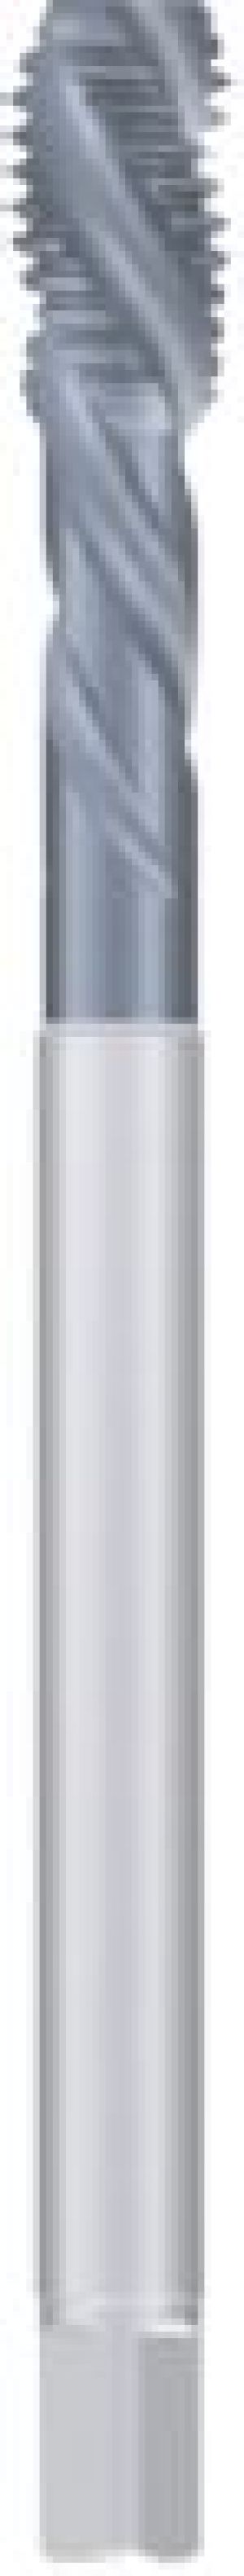 Fanar Gwintownik maszynowy M24 (D4-565001-0240) 1